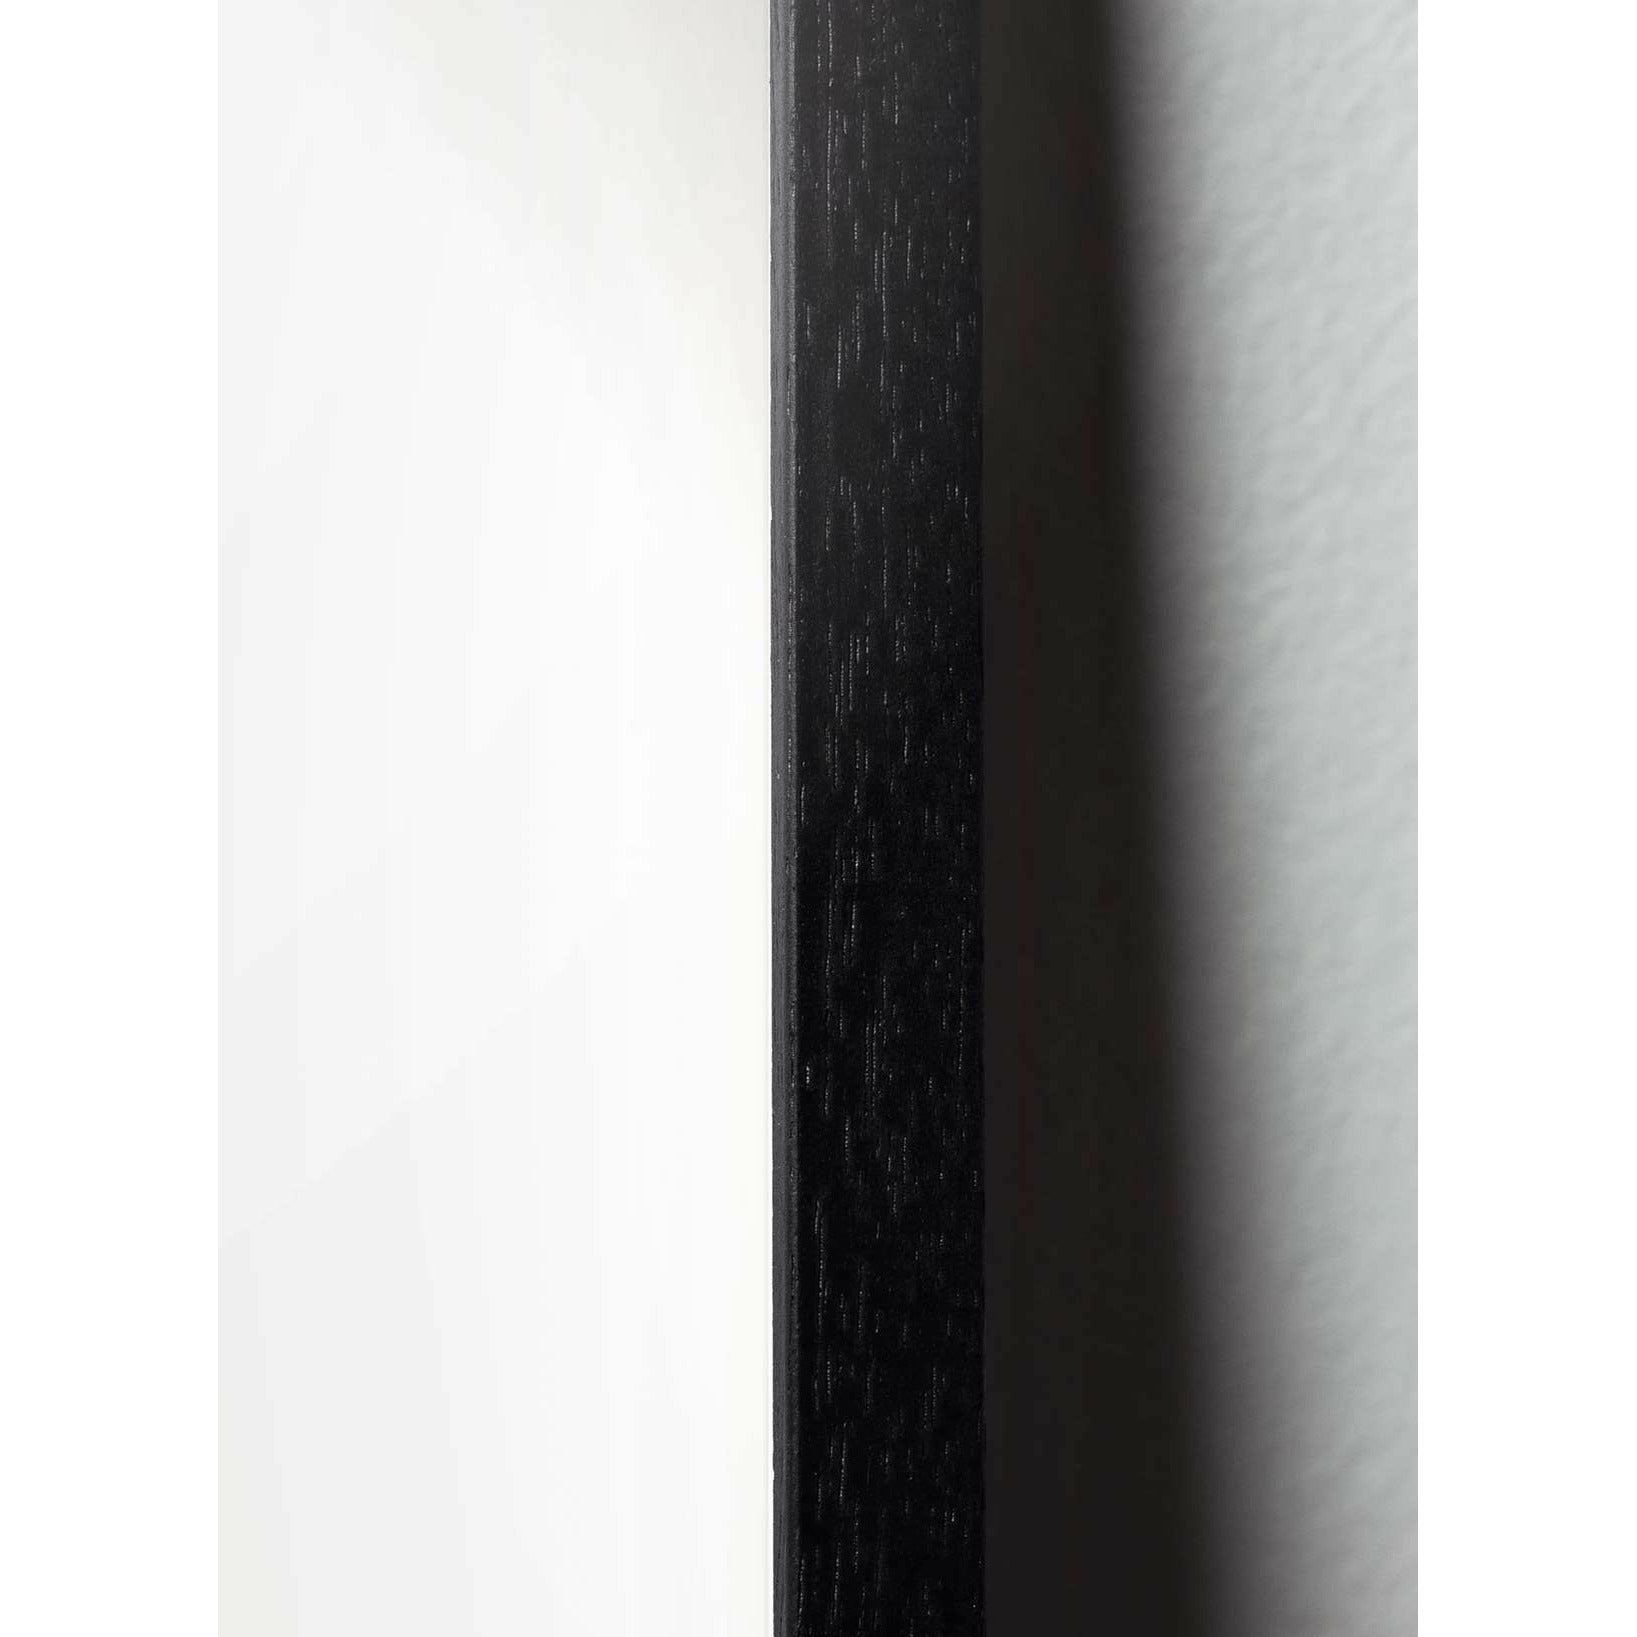 Brainchild Äggfigursaffisch, ram i svart -målat trä A5, brunt